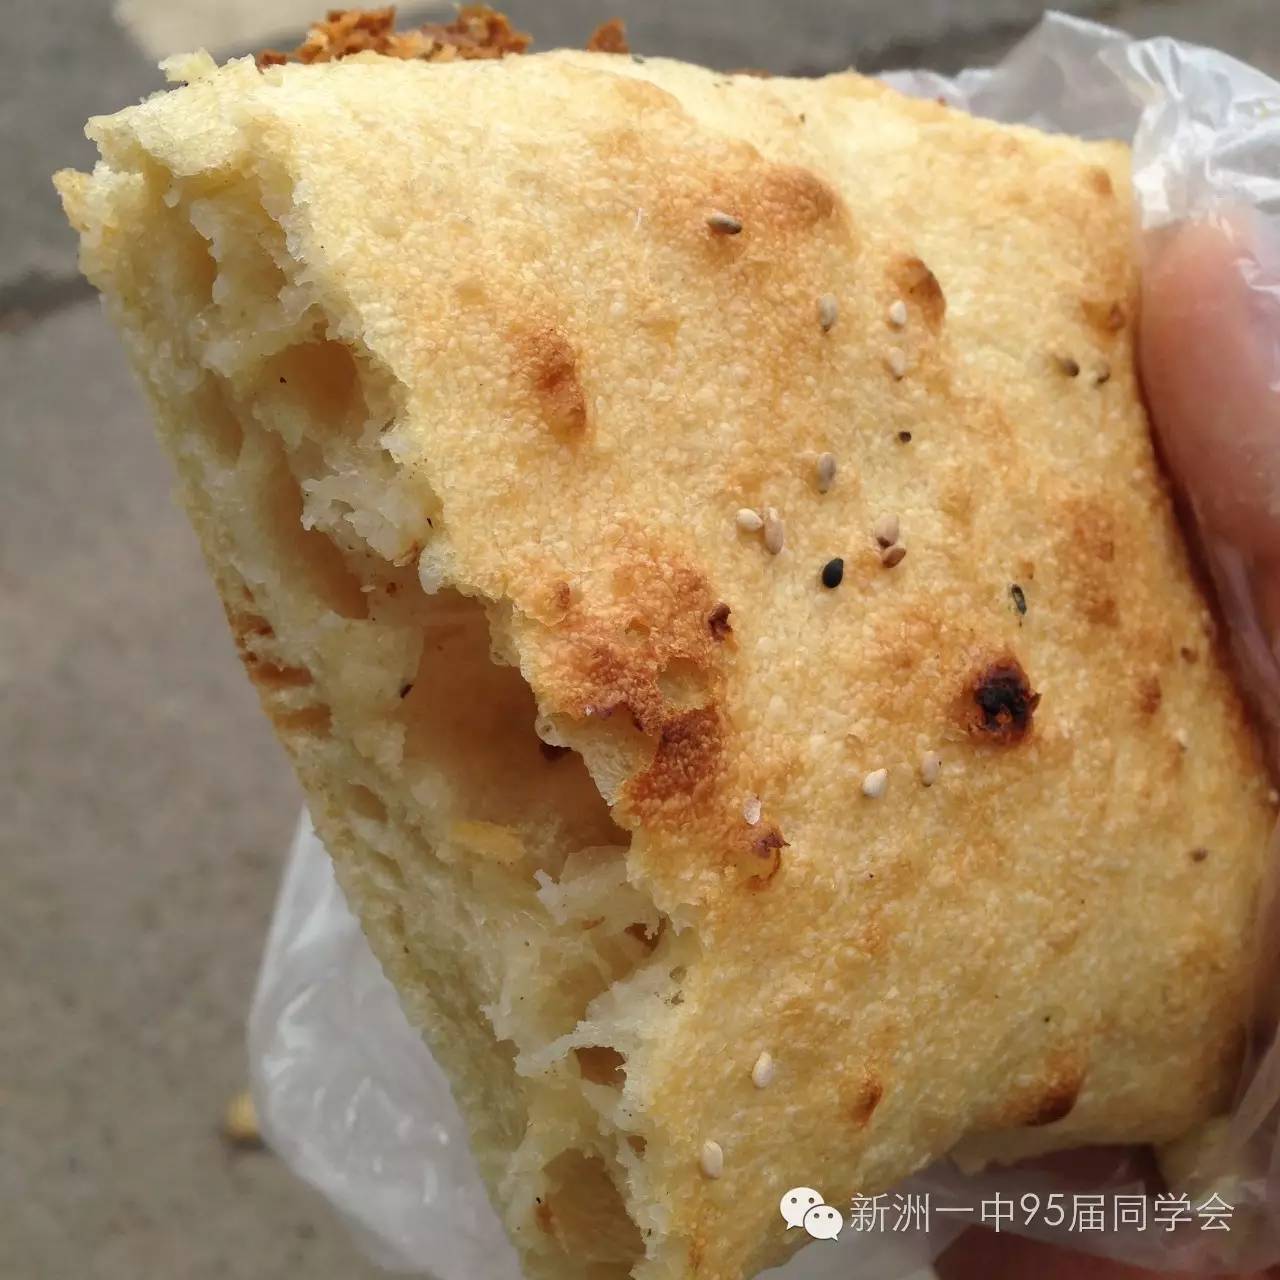 鄂州剁饼子图片